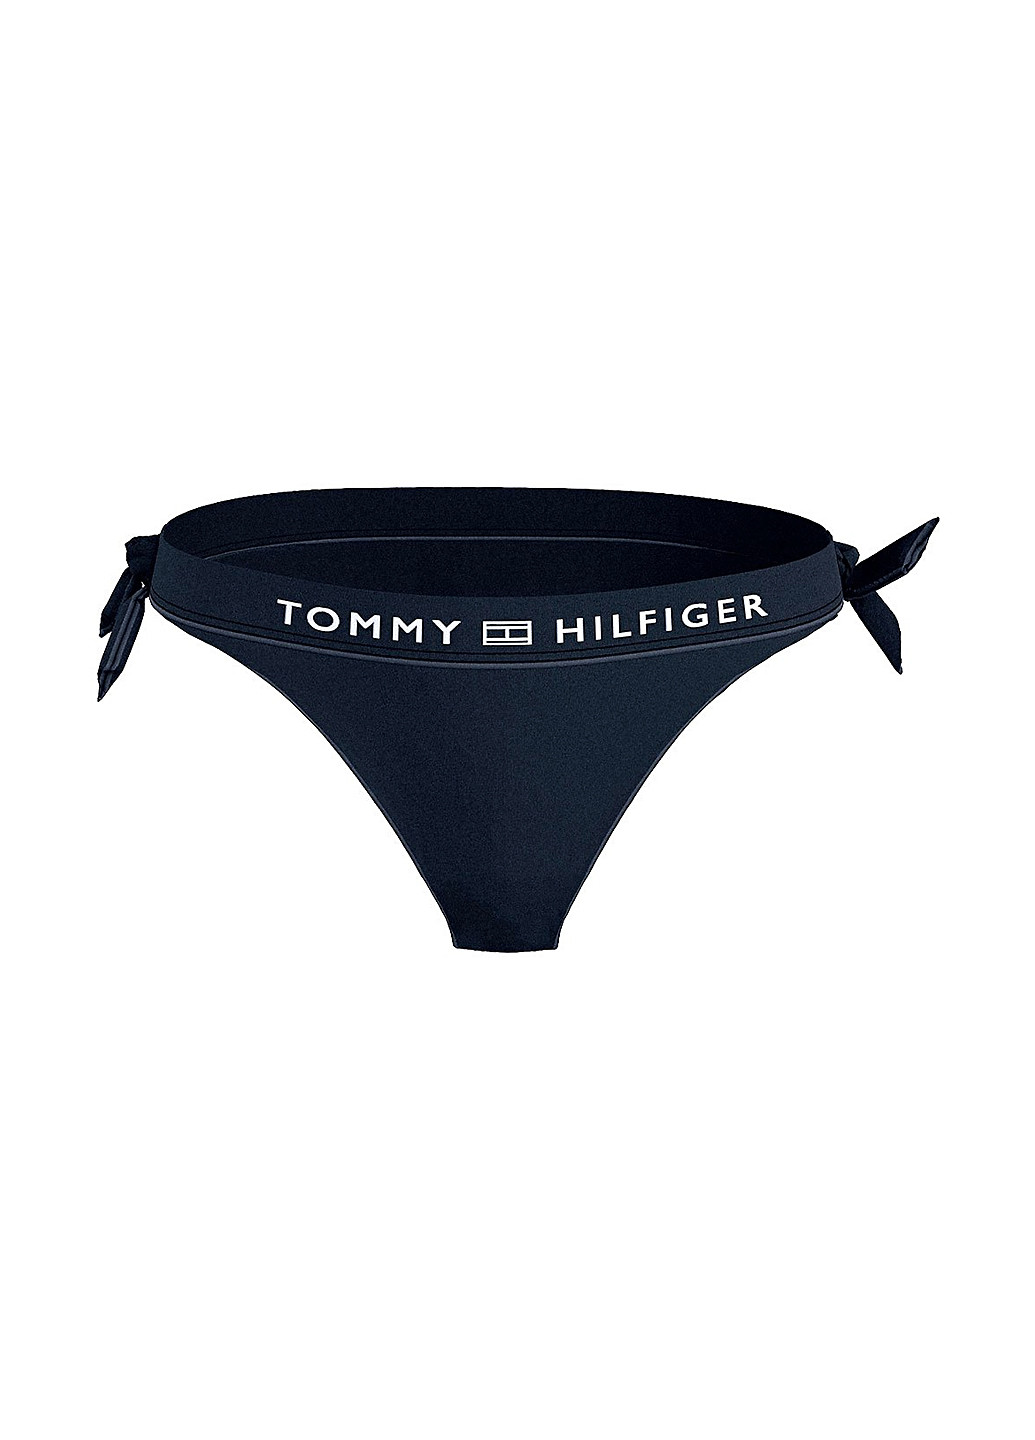 Темно-синие купальные трусики-плавки с надписью Tommy Hilfiger